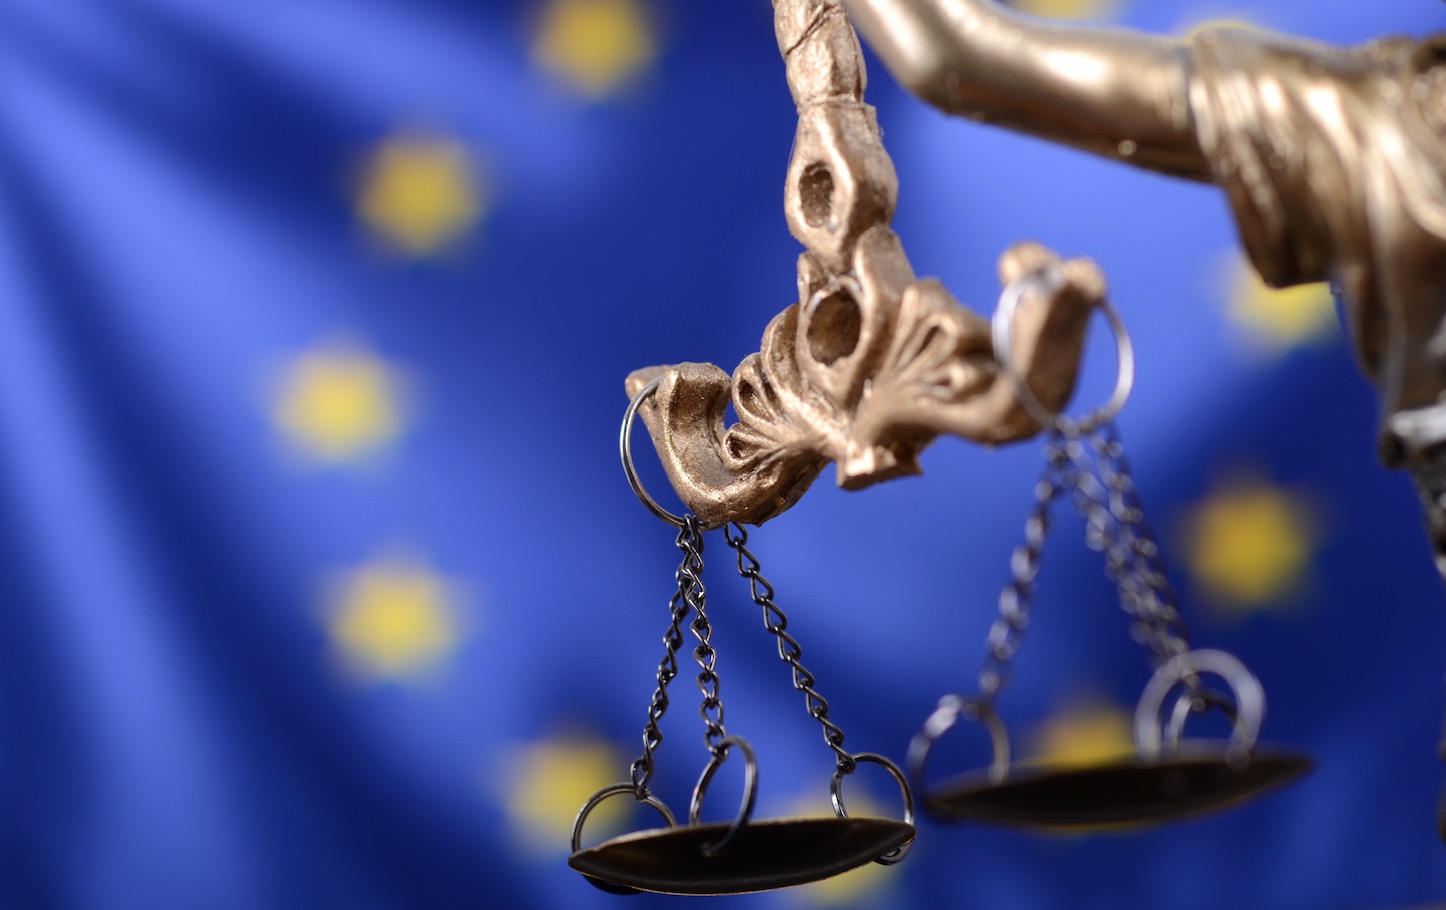 Google Shopping: Europees Hof van justitie bevestigt boete van 2,4 miljard